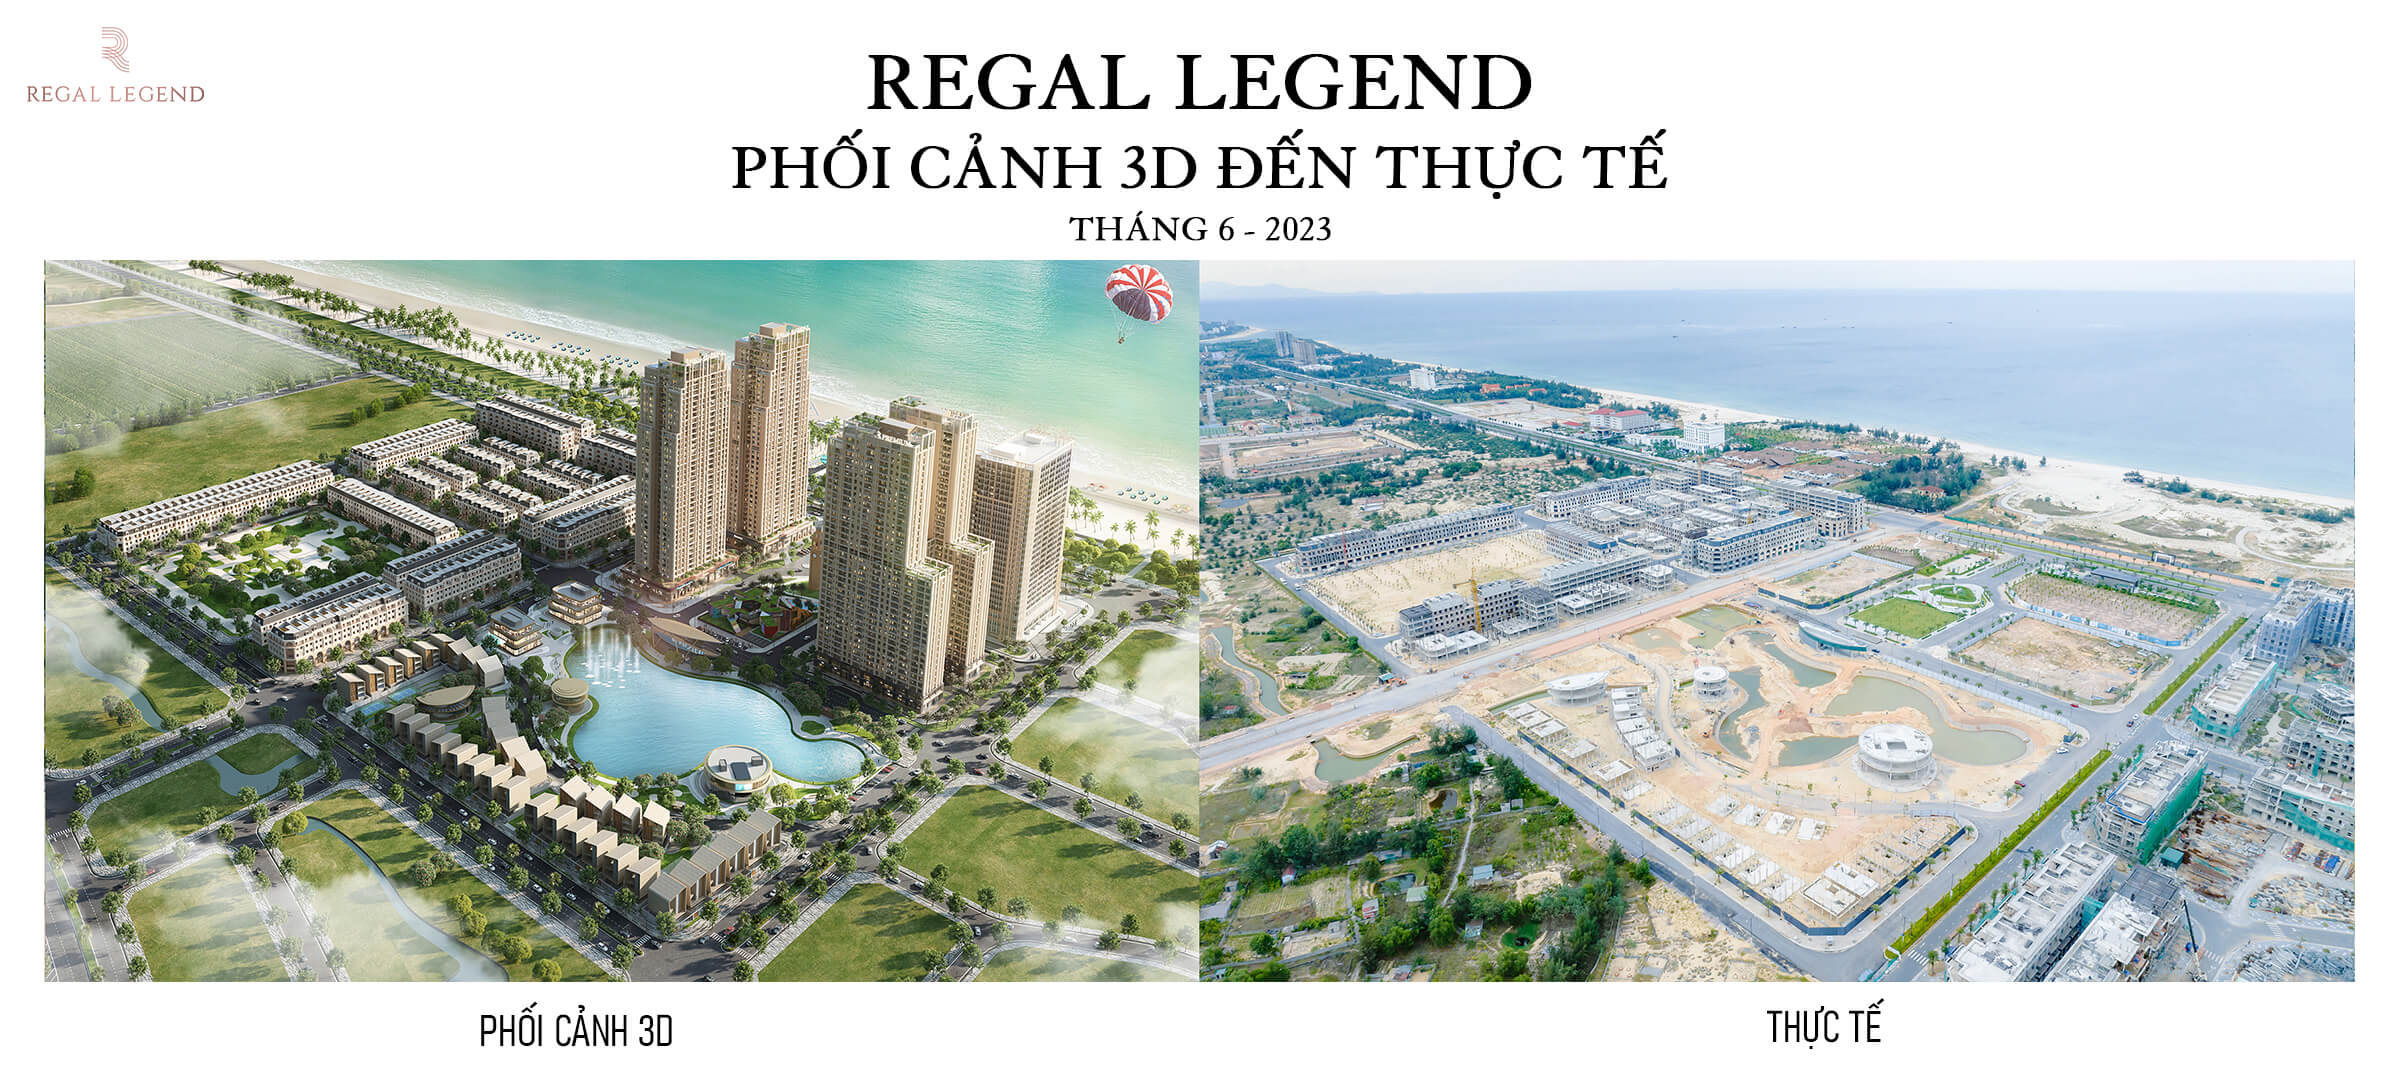 Tiến độ dự án Regal Legend cập nhật tháng 06.2023 - Viet Nam Smart City